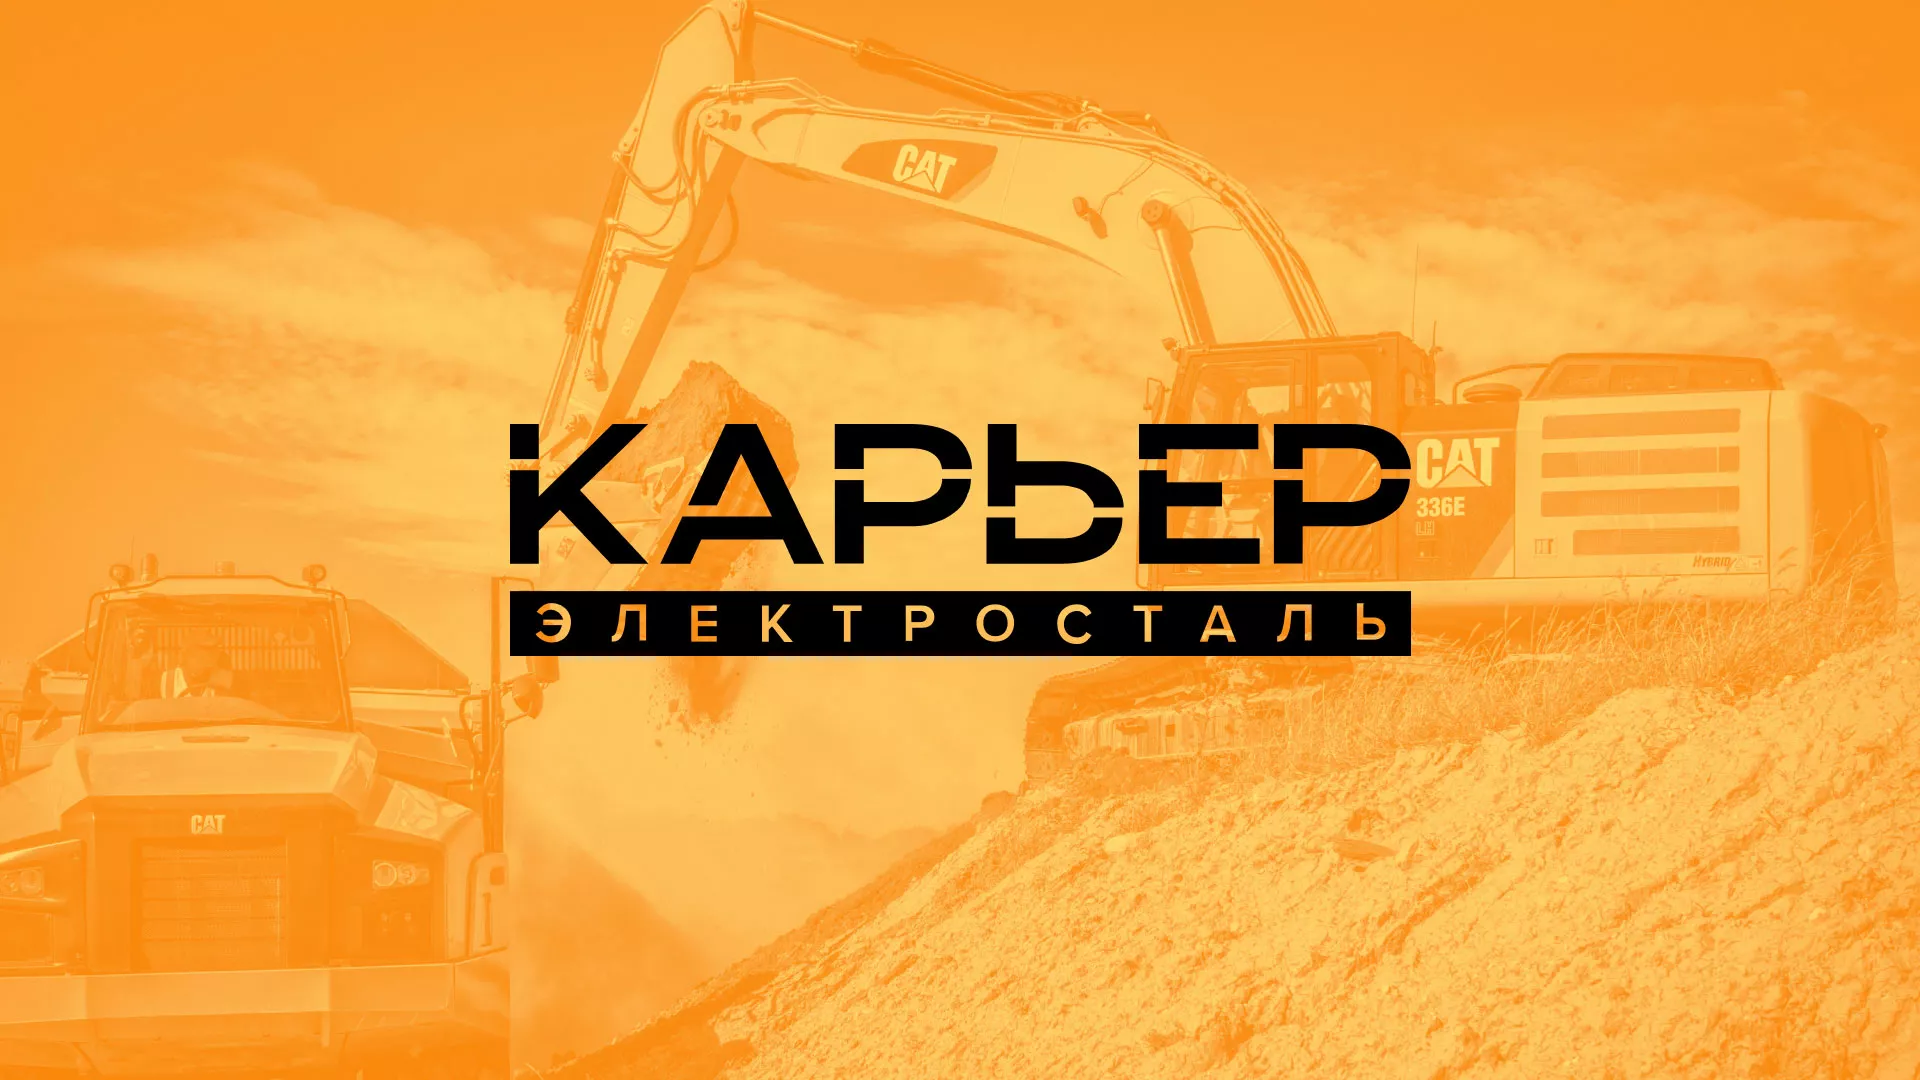 Разработка сайта по продаже нерудных материалов «Карьер» в Усть-Катаве